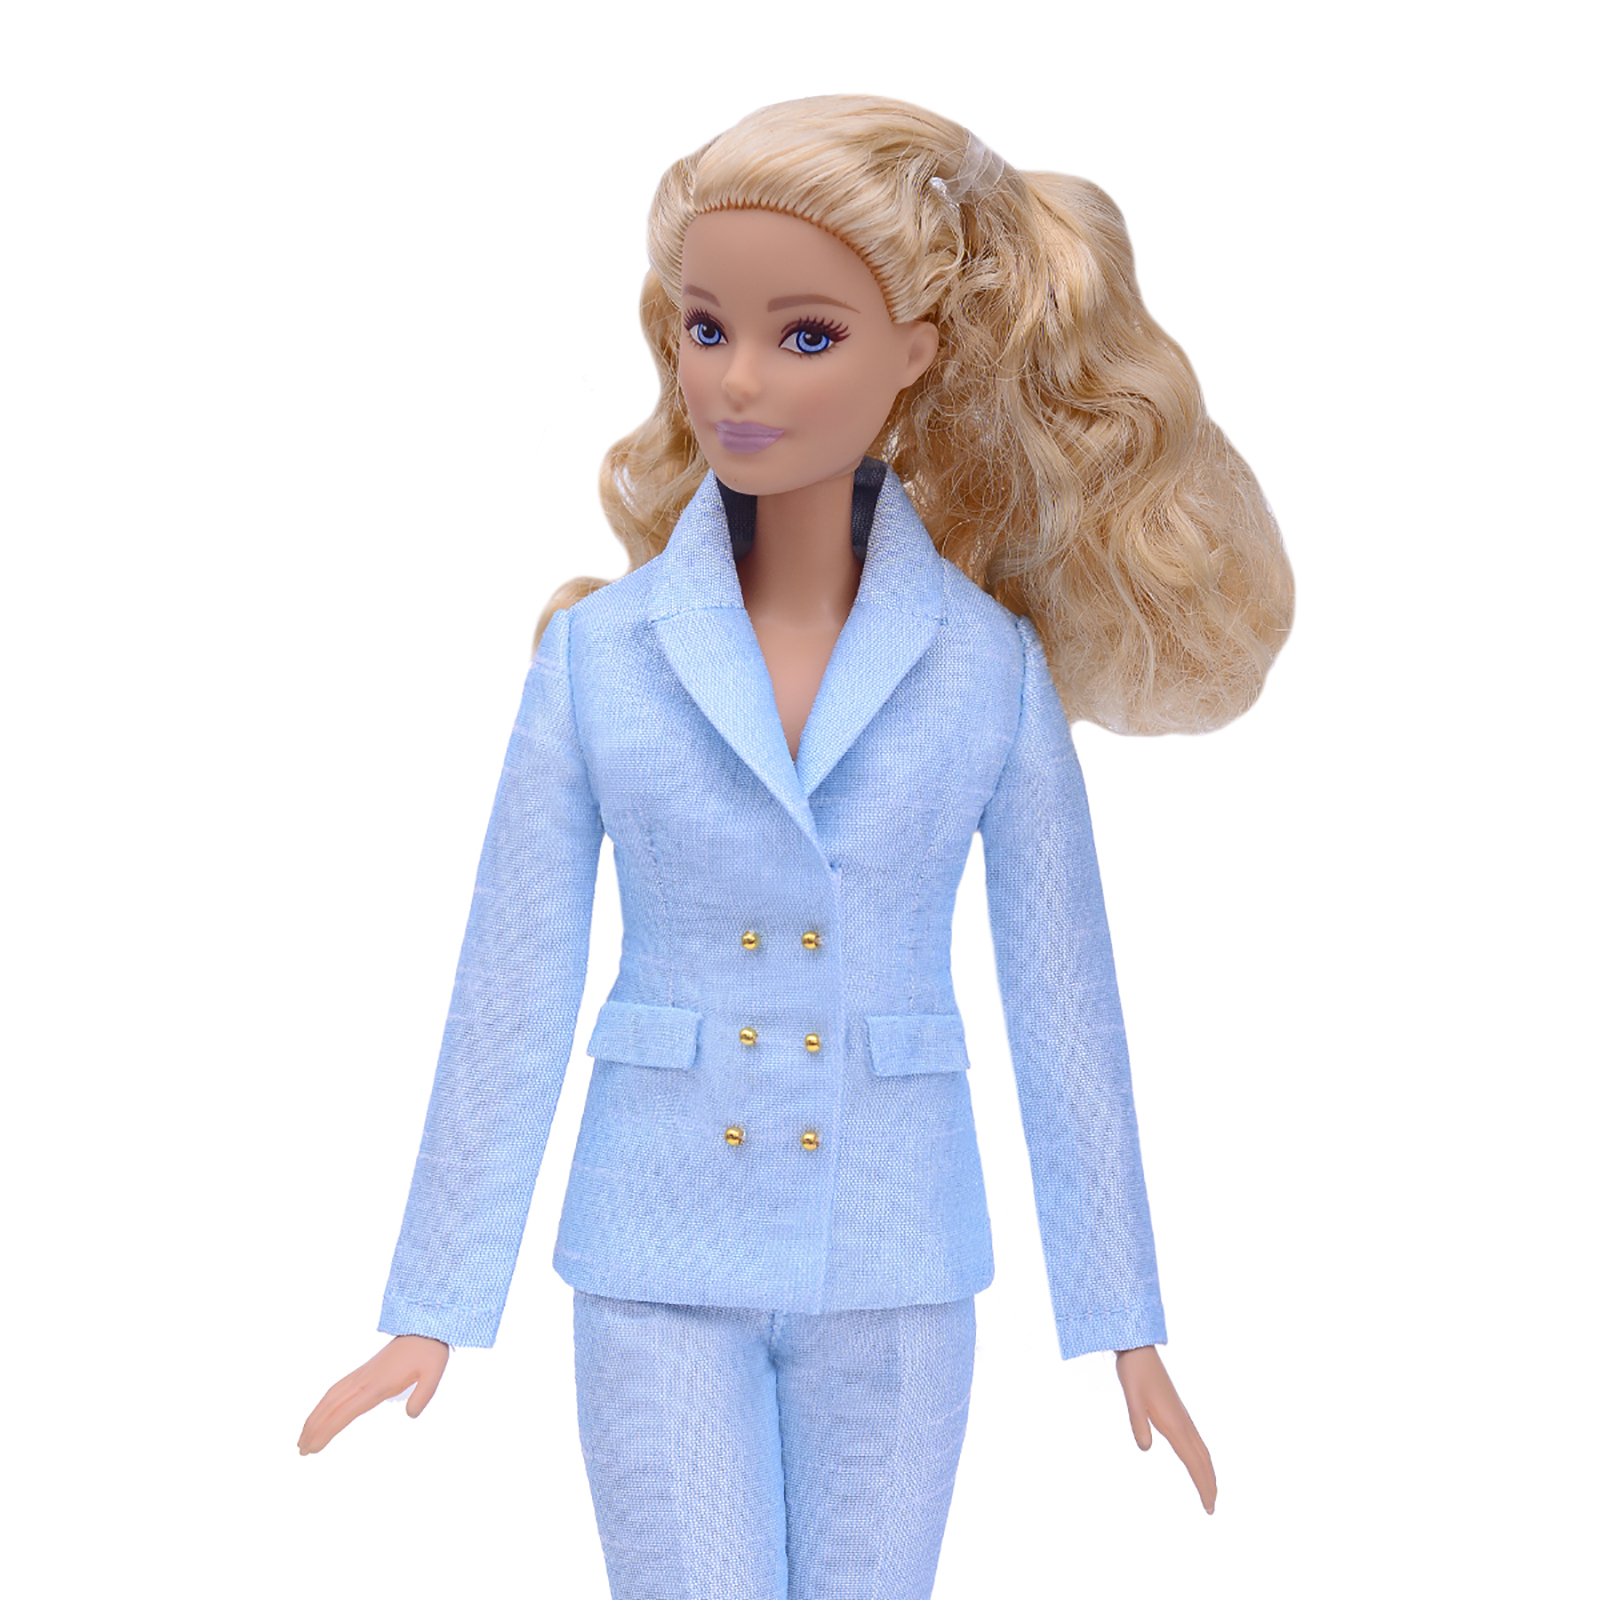 Шелковый брючный костюм Эленприв Светло-голубой для куклы 29 см типа Барби FA-011-09 - фото 2